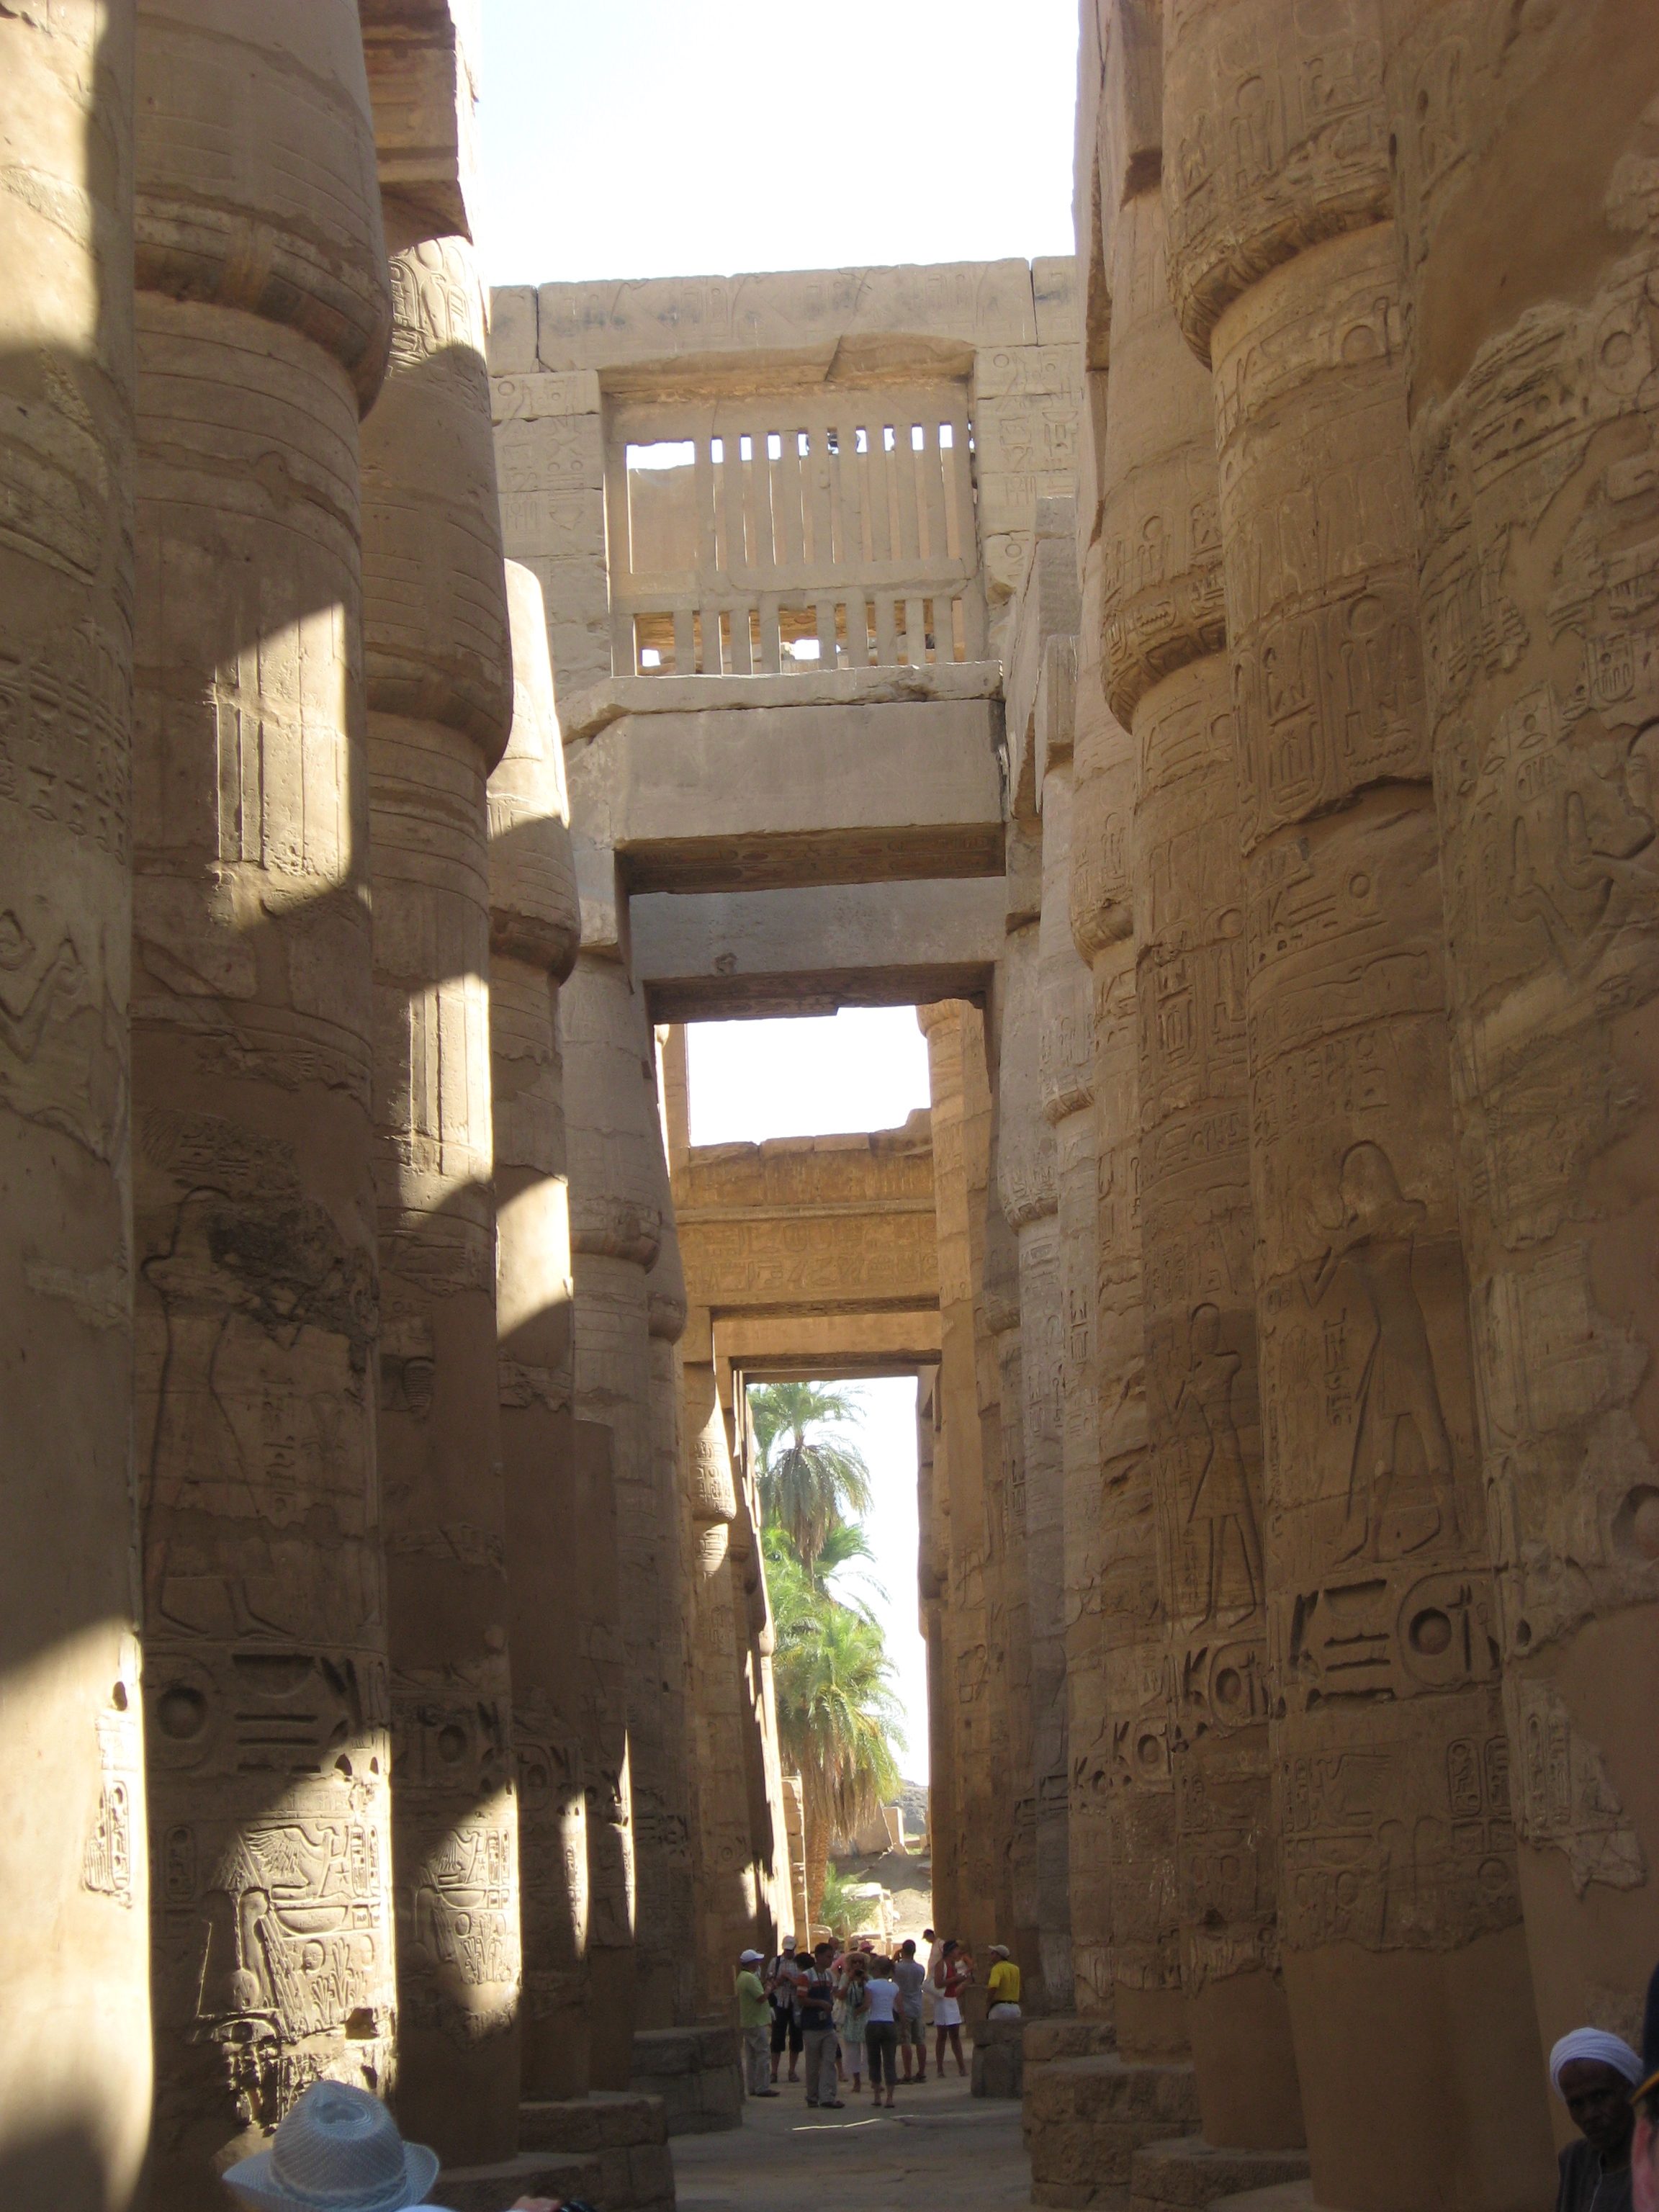 Karnak Temple - 6/7/07